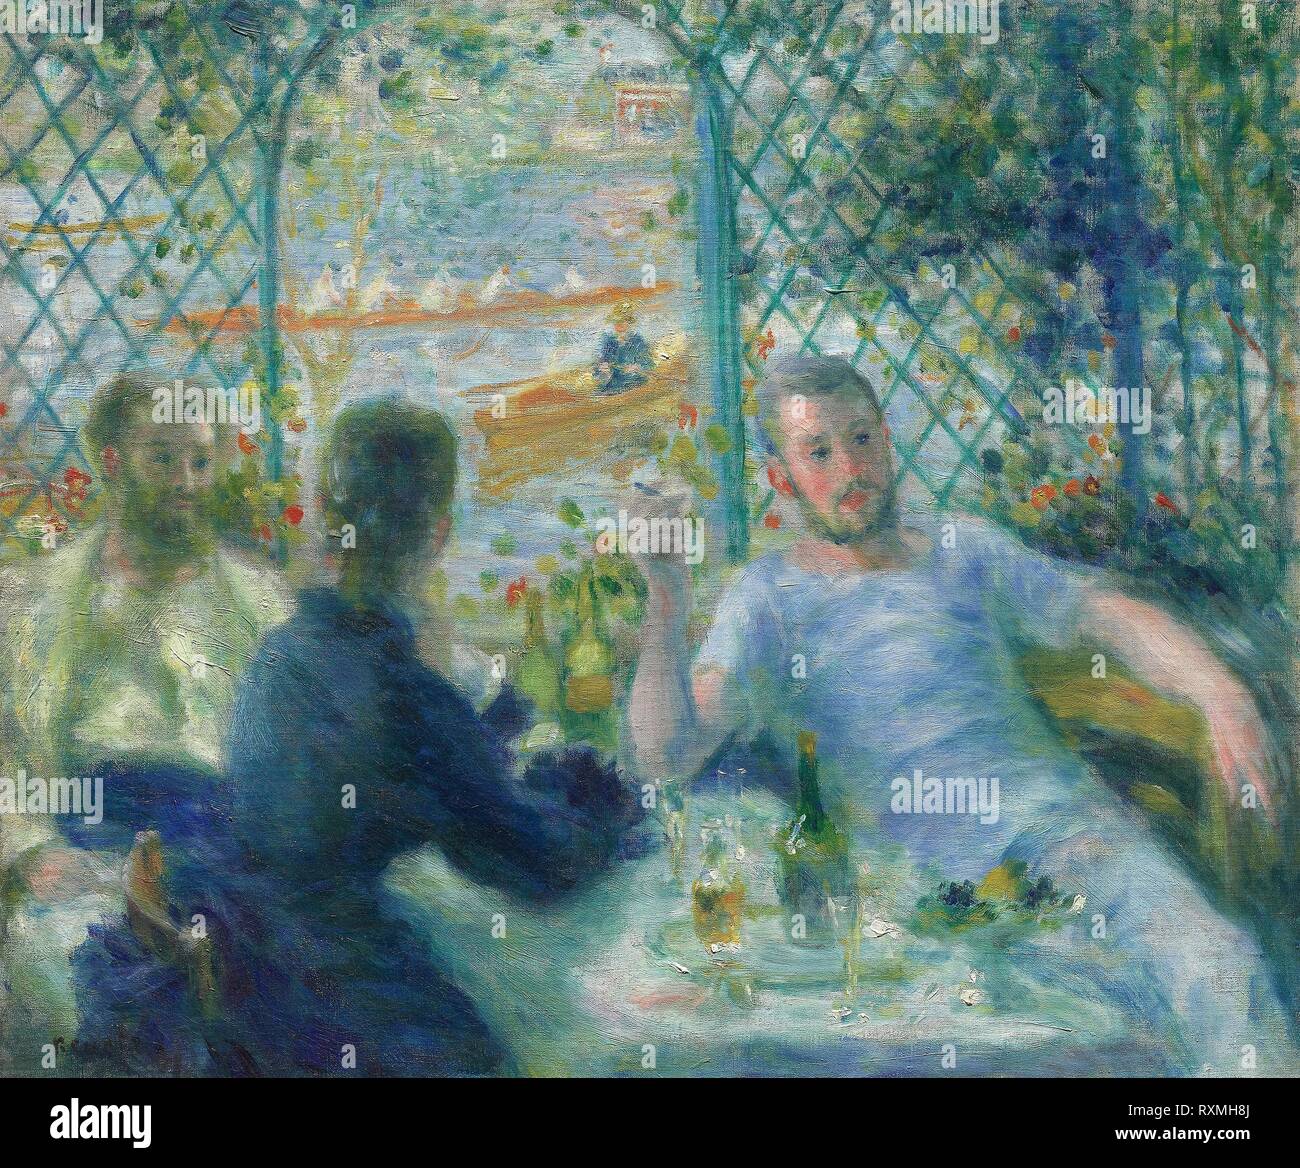 Pranzo presso il ristorante Fournaise (regatanti' pranzo). Pierre-Auguste Renoir; francese, 1841-1919. Data: 1875. Dimensioni: 55 × 65,9 cm (21 5/8 × 25 15/16 in.). Olio su tela. Provenienza: Francia. Museo: Chicago Art Institute. Foto Stock